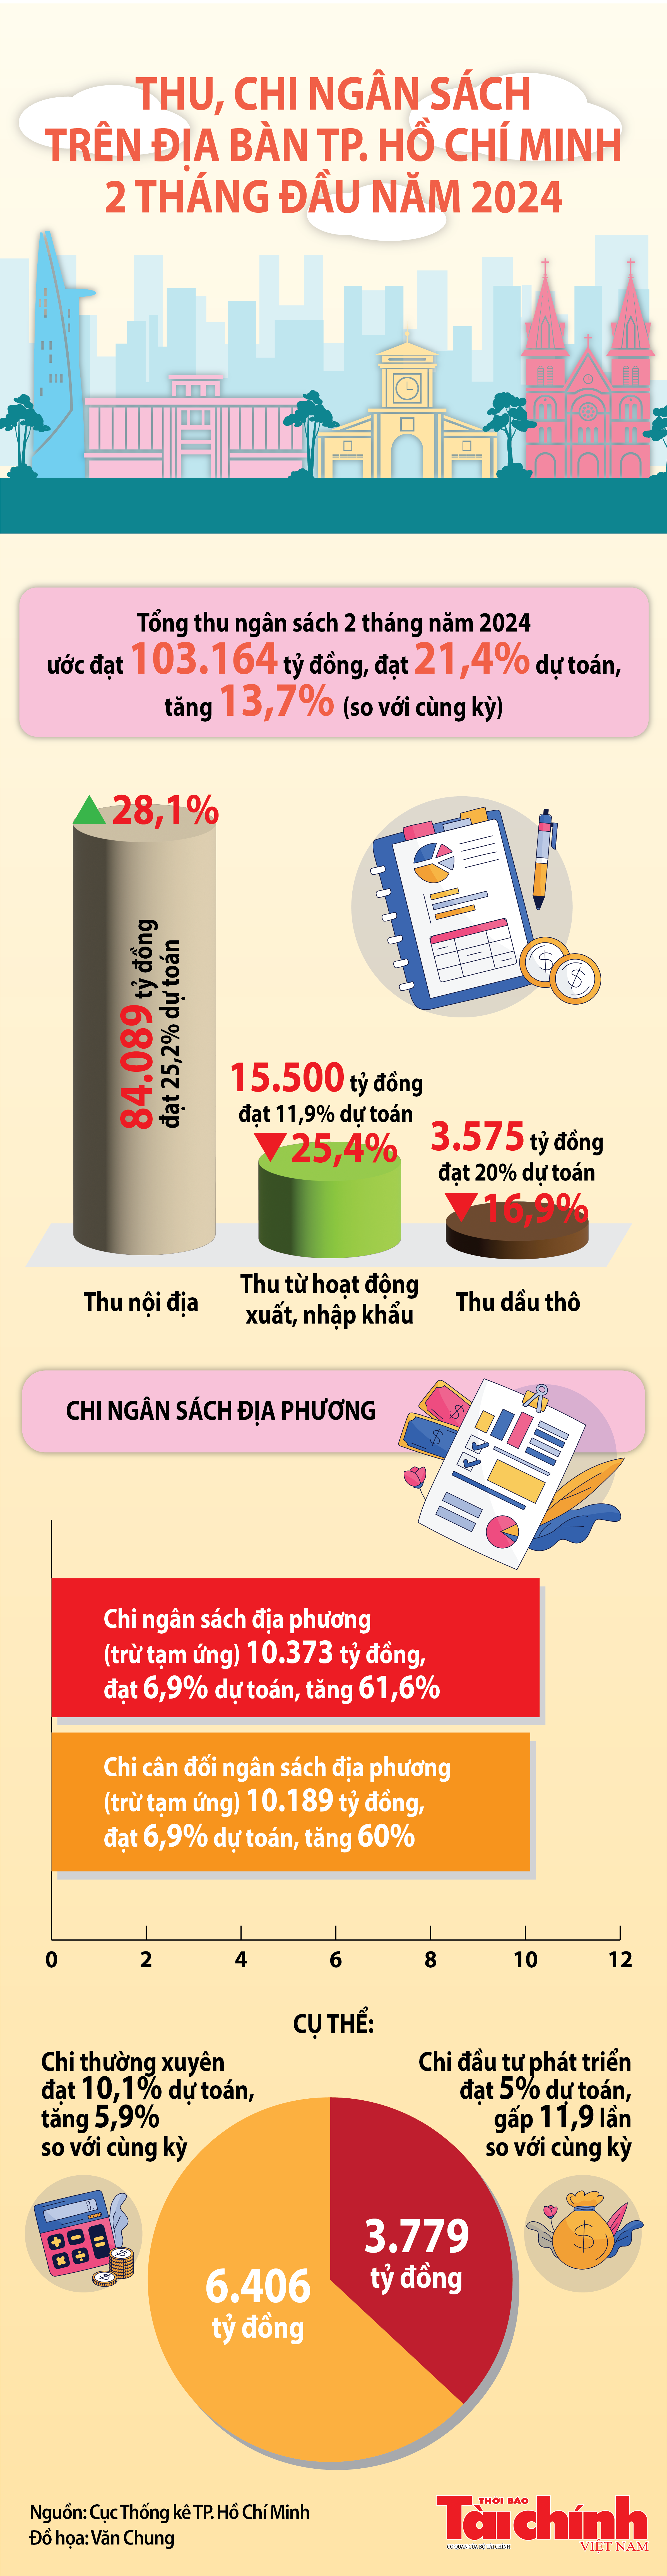 TP. Hồ Chí Minh: Thu ngân sách 2 tháng đầu năm 2024 ước đạt 103.164 tỷ đồng